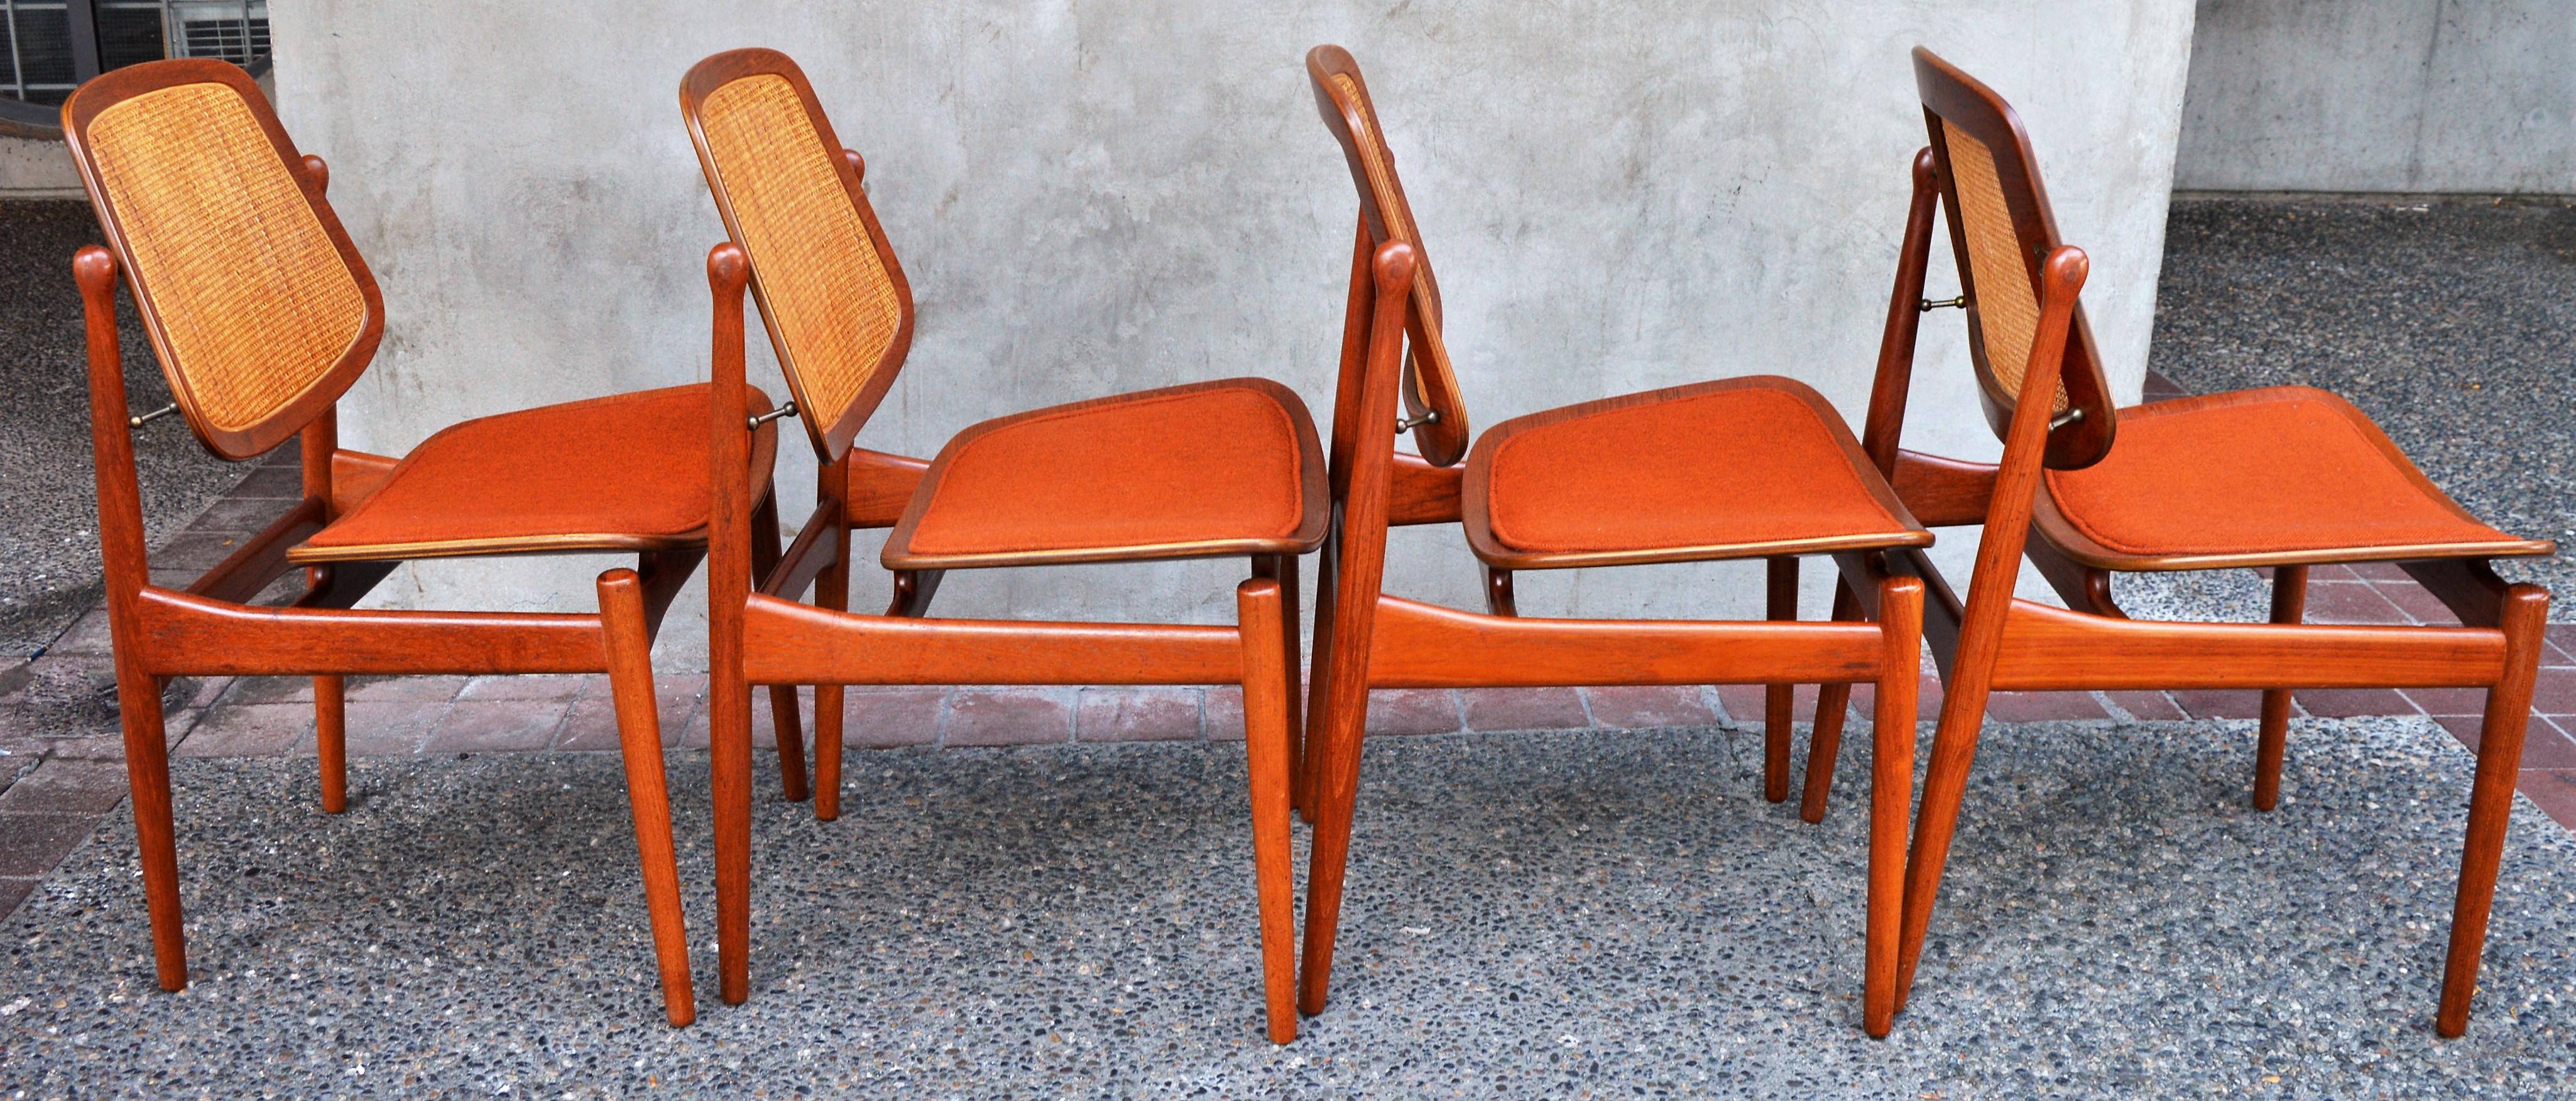 Set of 4 Arne Vodder 1950s Teak and Cane Dining Chairs for France & Daverkosen 1